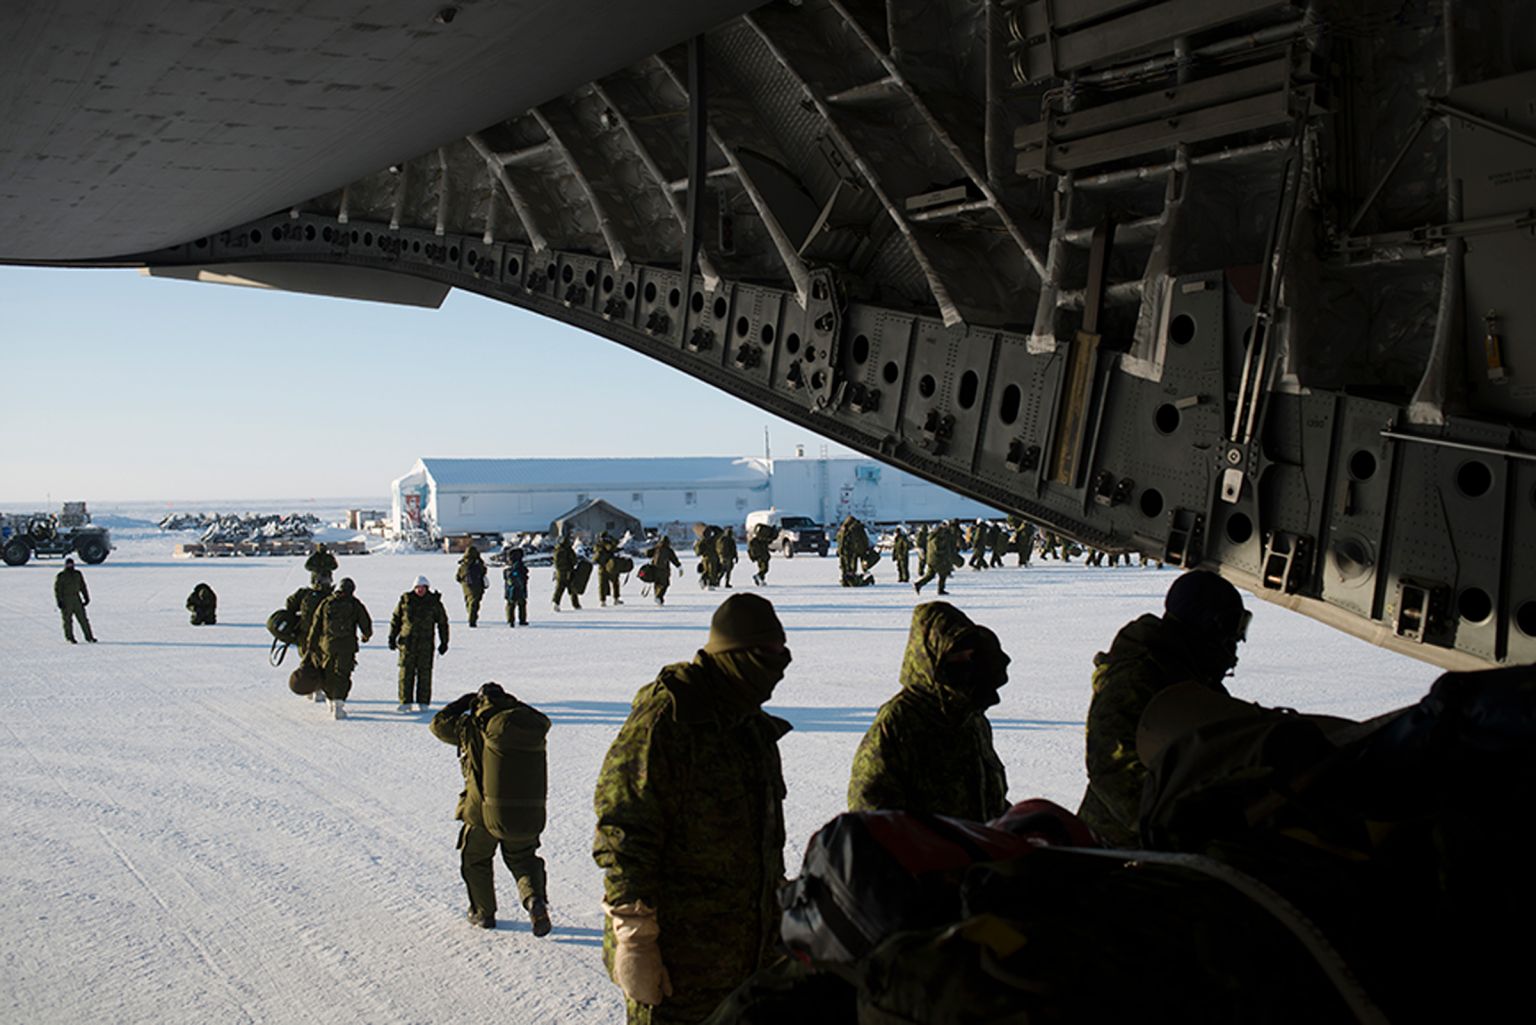 La base de Hall Beach, dans la région de Qikiqtaaluk, au Nunavut (Canada) a été fondée en 1957 pour accueillir un radar, puis un aéroport, tout près d’une communauté inuit de 650 habitants. Des soldats vont et viennent au gré des entraînements. « Keep moving » est l’ordre qu’on entend le plus. Ne pas bouger, c’est risquer la mort.